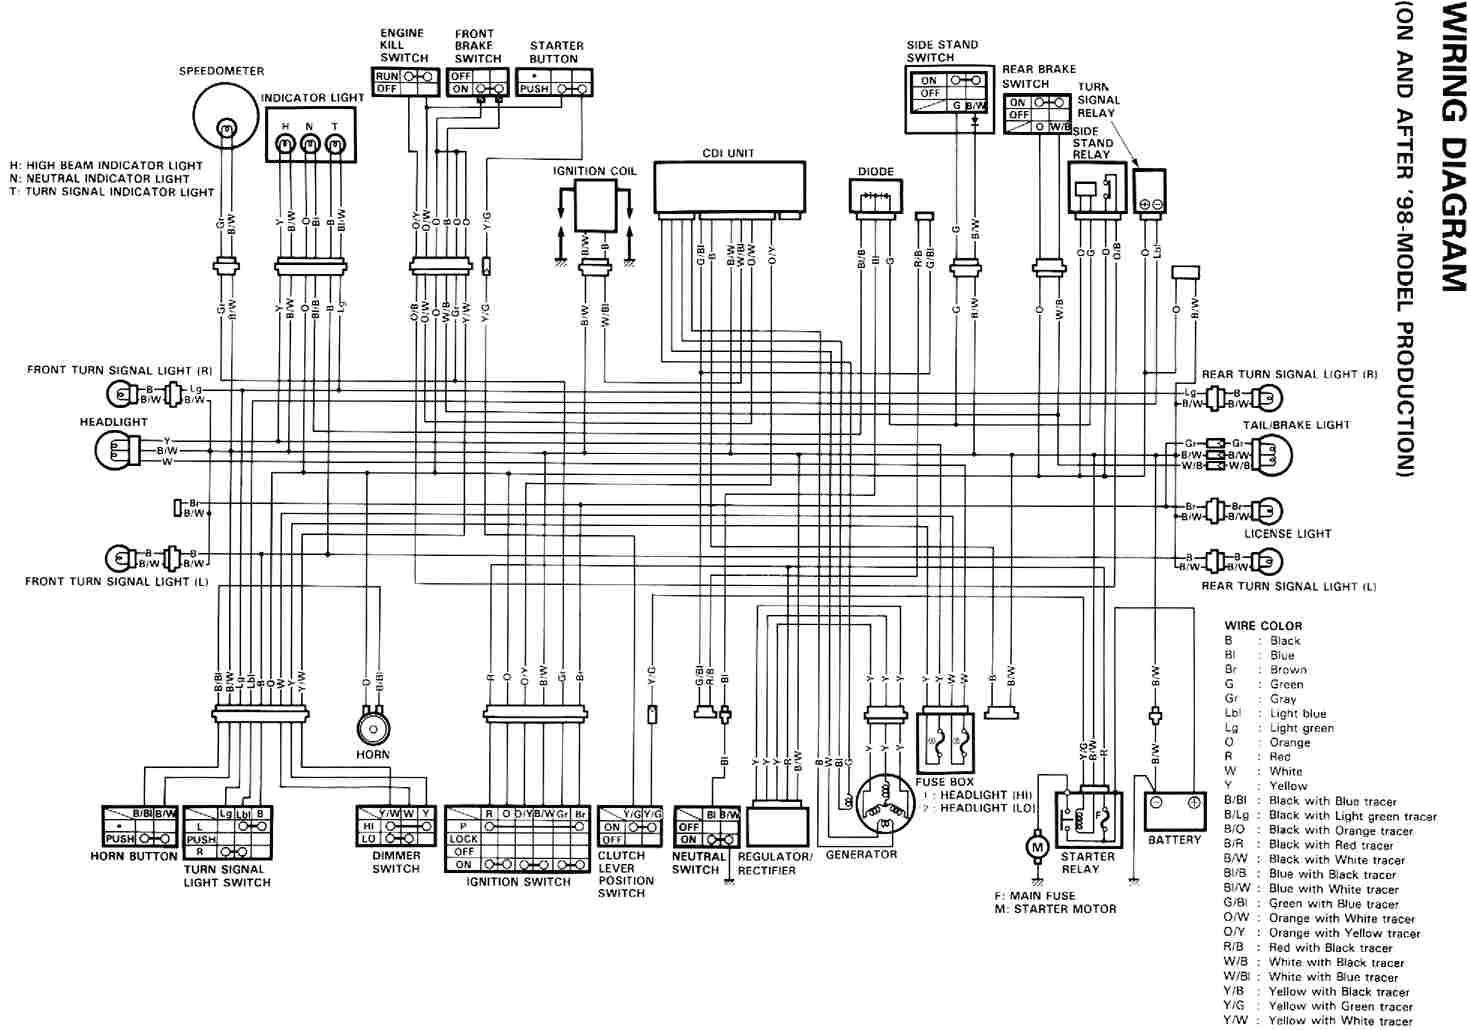 1994 wr 250 wiring diagram